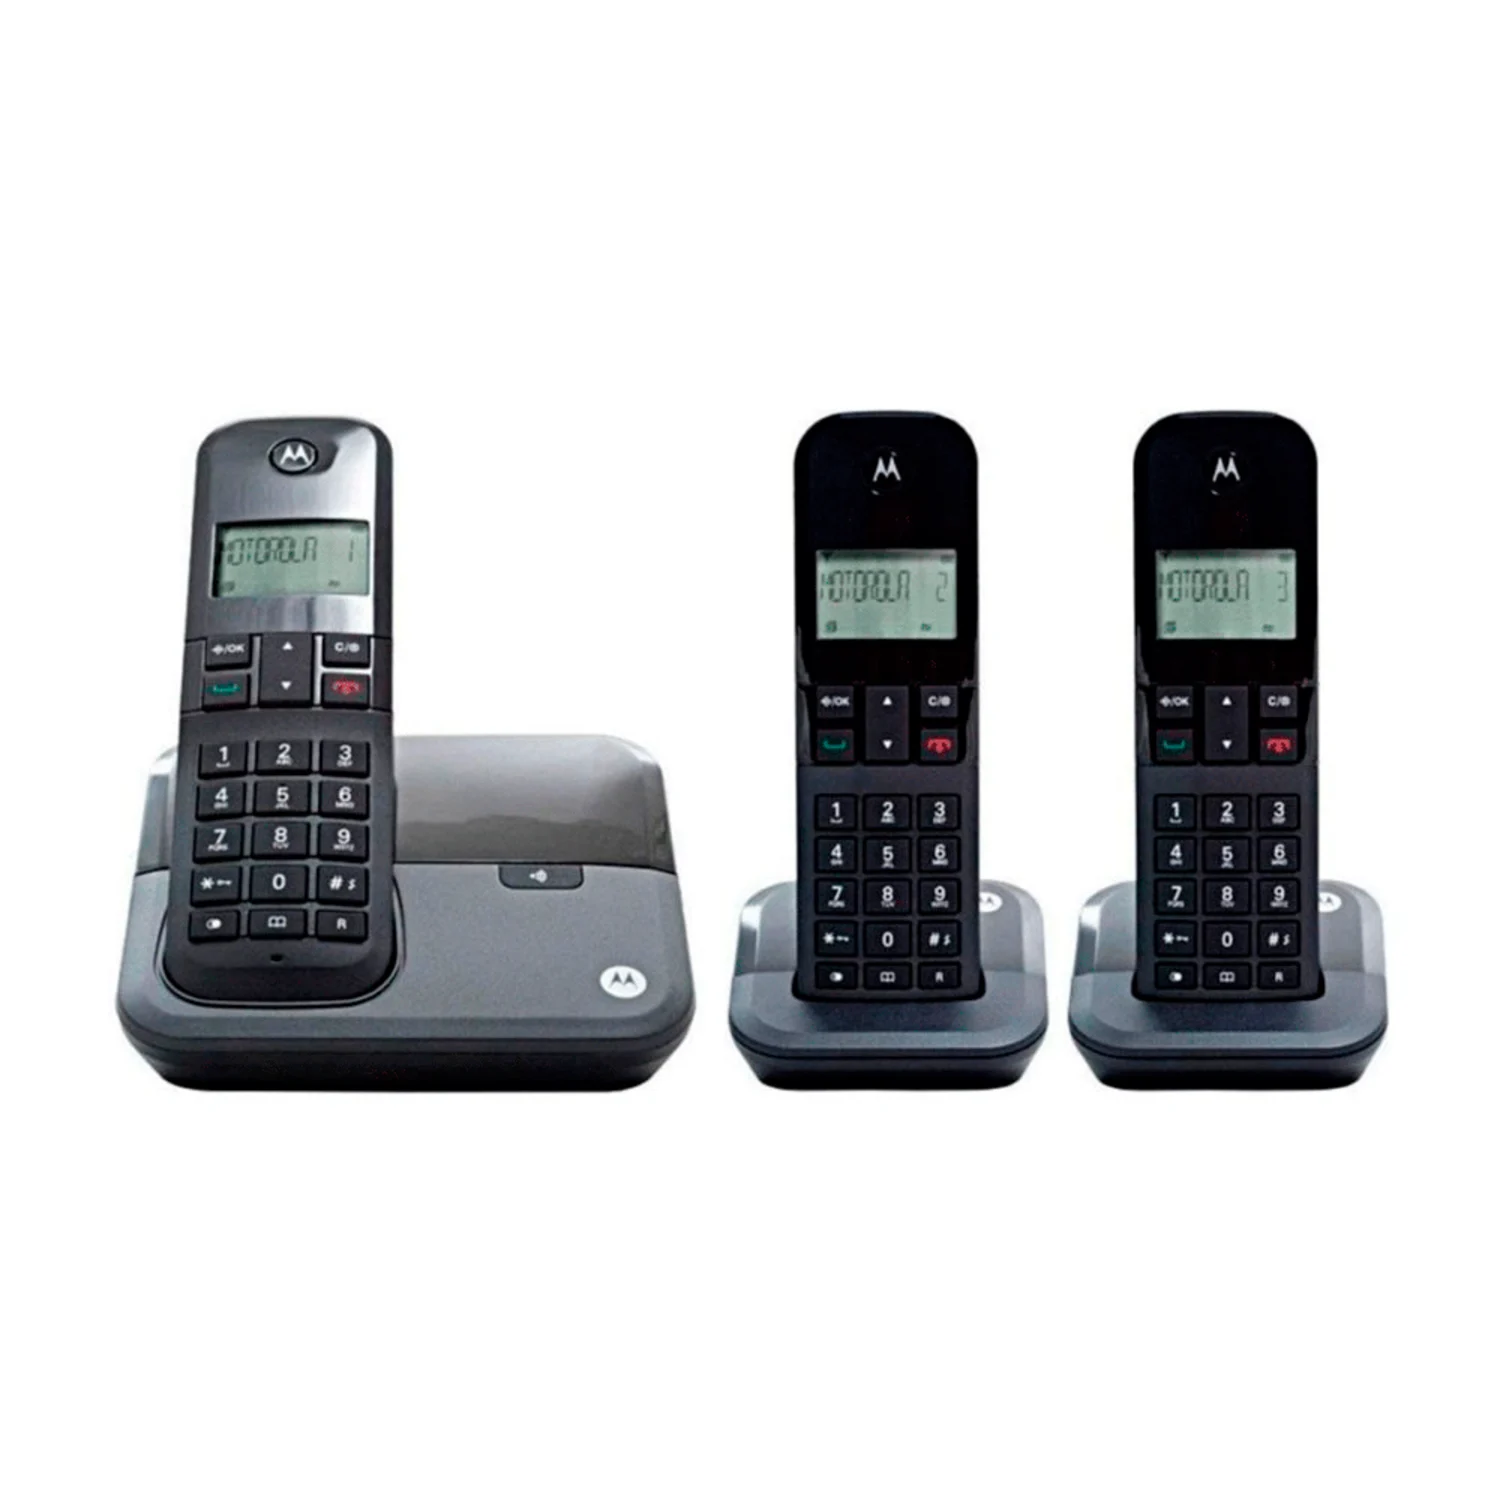 Telefone Motorola M3000-3 Bina / 3 Bases / Bivolt - Preto